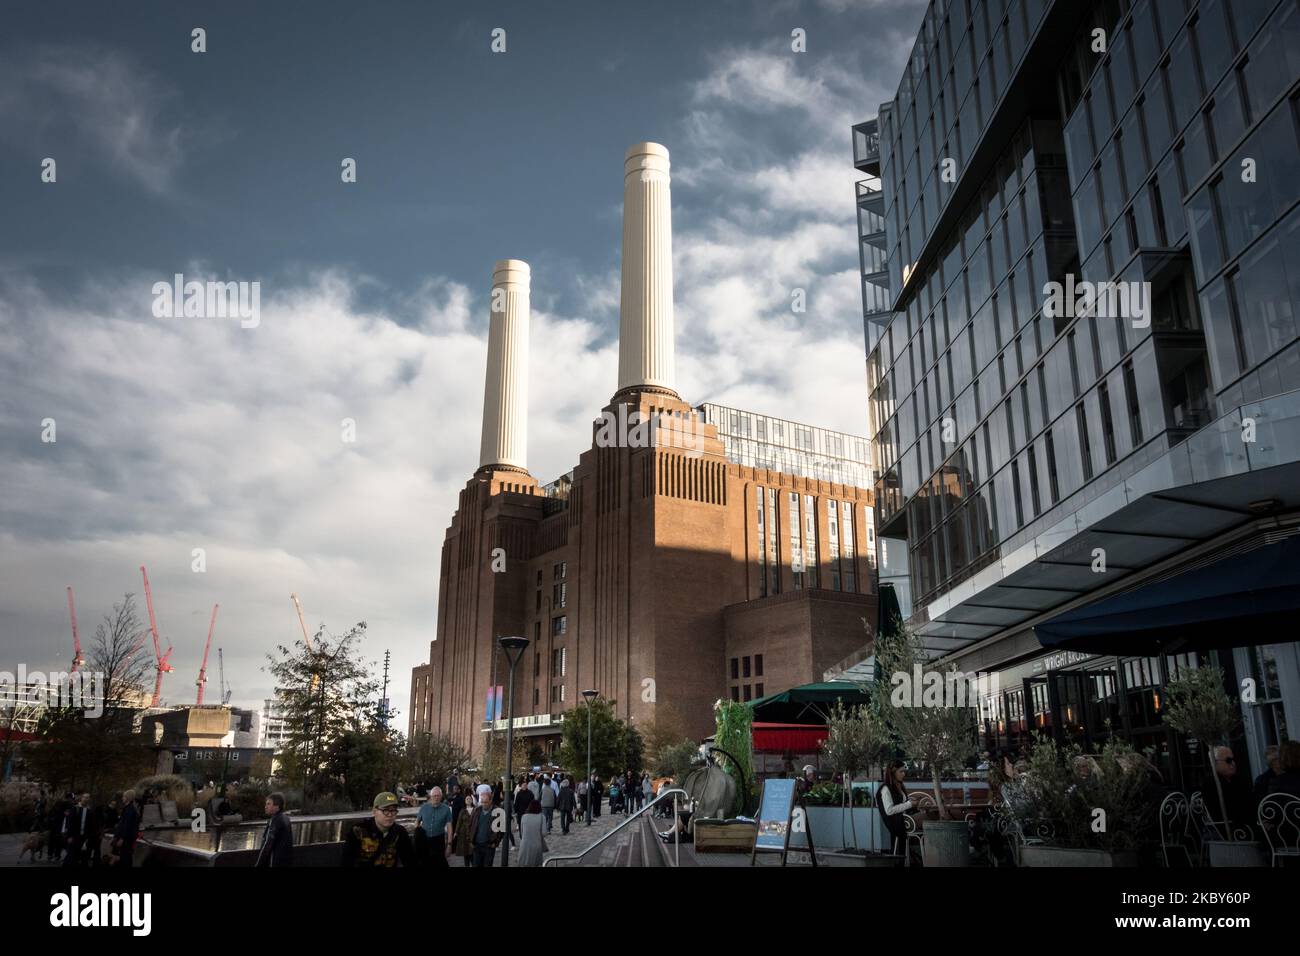 Les cheminées de la nouvelle station électrique Battersea Power Station, Nine Elms, Vauxhall, Londres, Angleterre, ROYAUME-UNI Banque D'Images